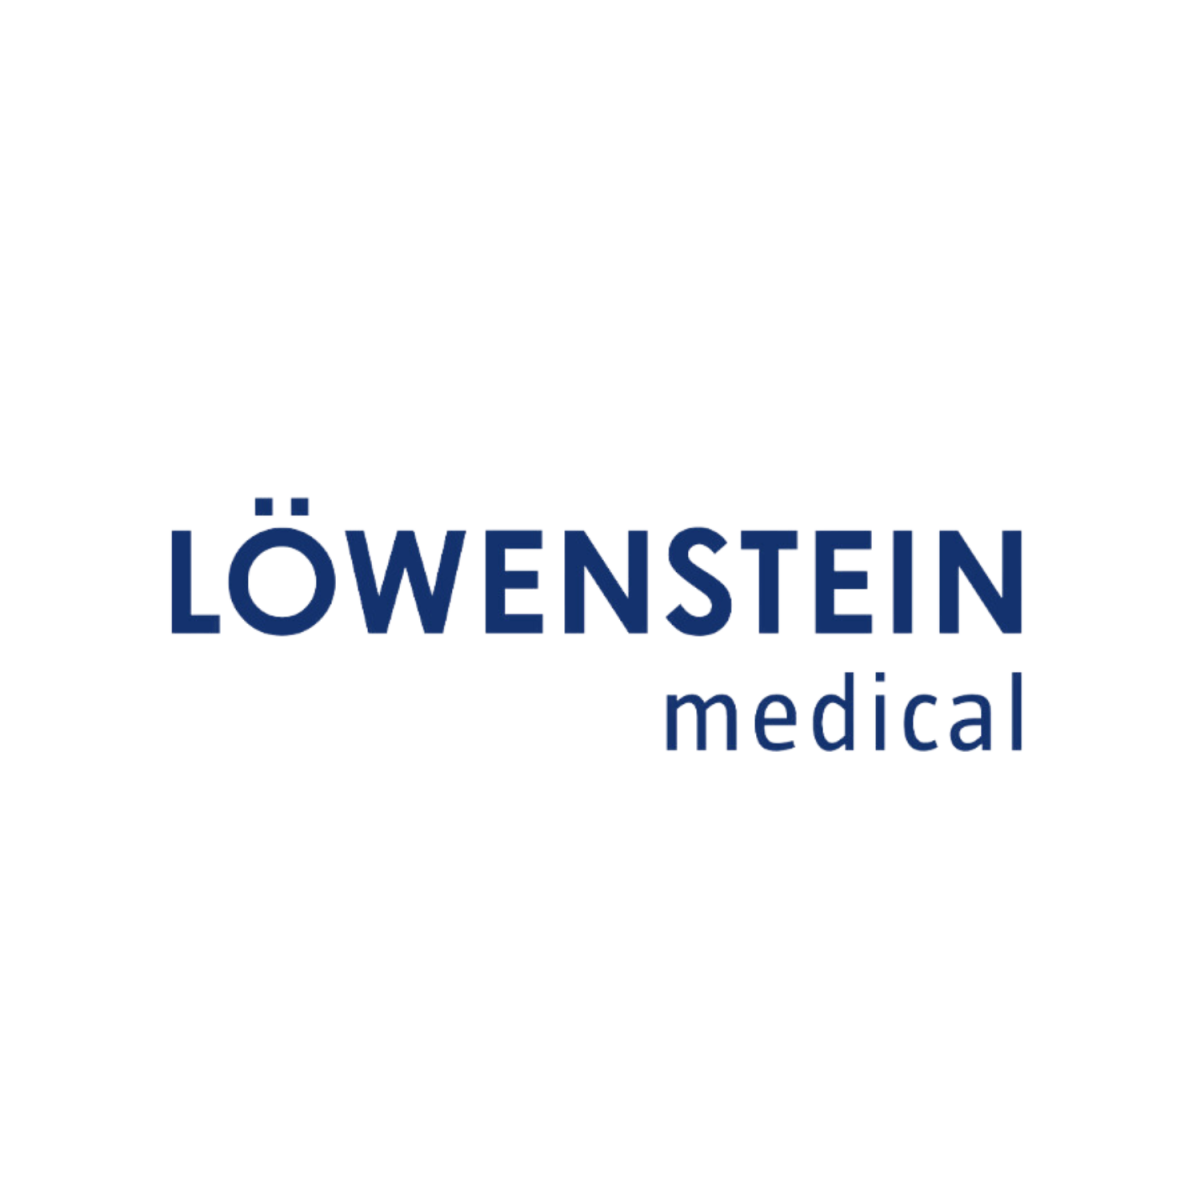 Loewenstein Medical | Intus Healthcare